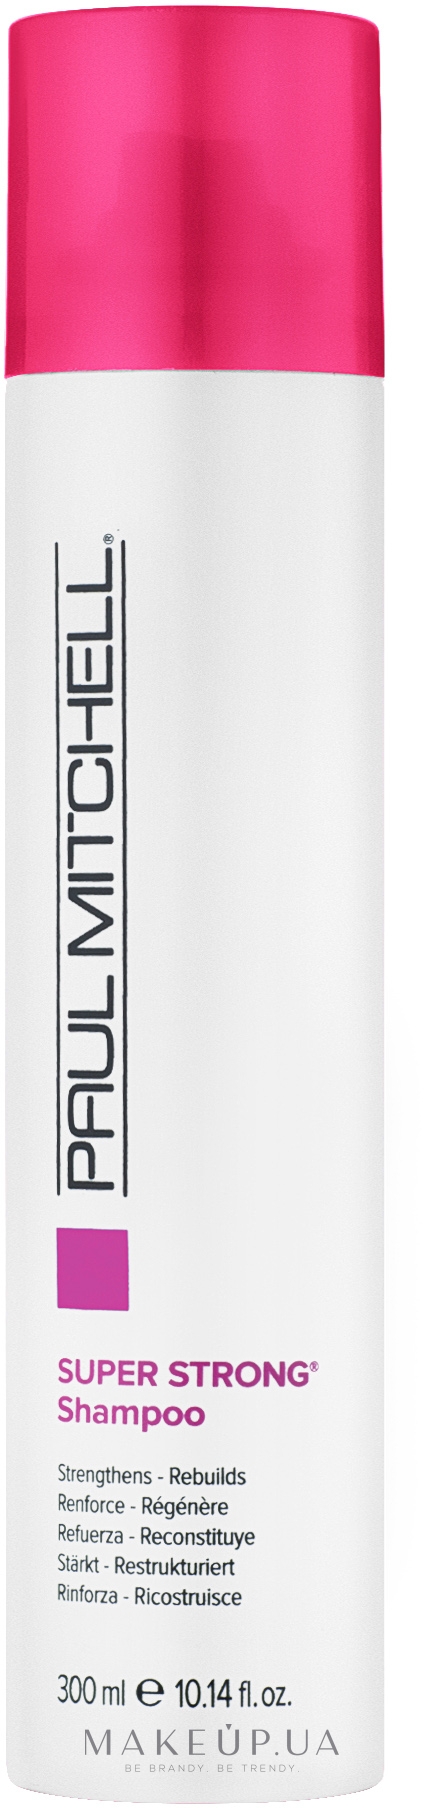 Відновлюючий і зміцнюючий шампунь - Paul Mitchell Strength Super Strong Daily Shampoo — фото 300ml